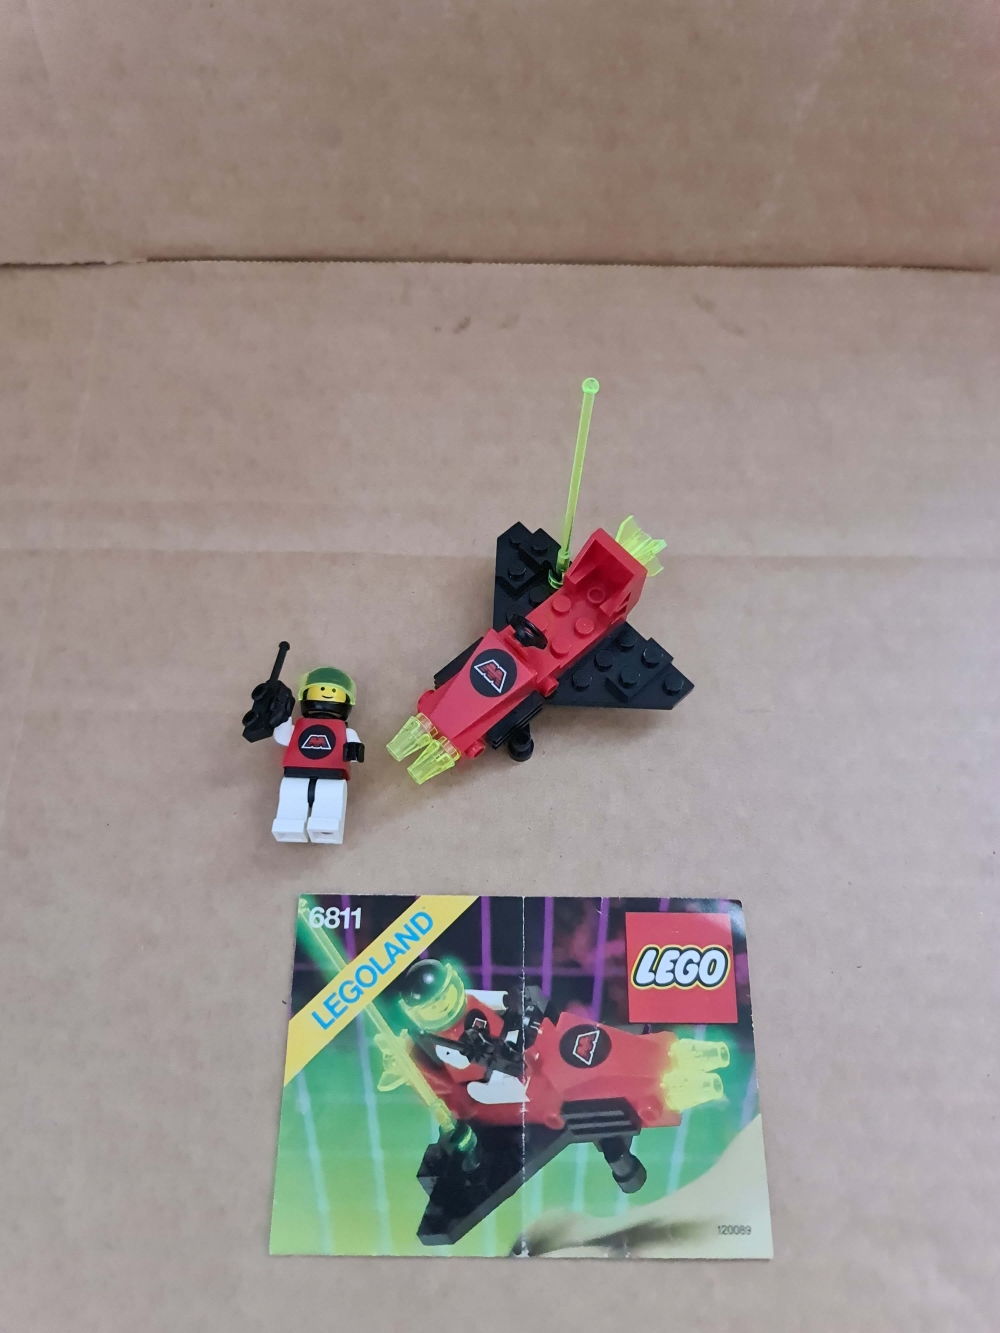 Sett 6811 fra Lego Space : M:tron serien.
Meget pent.
Komplett med manual.